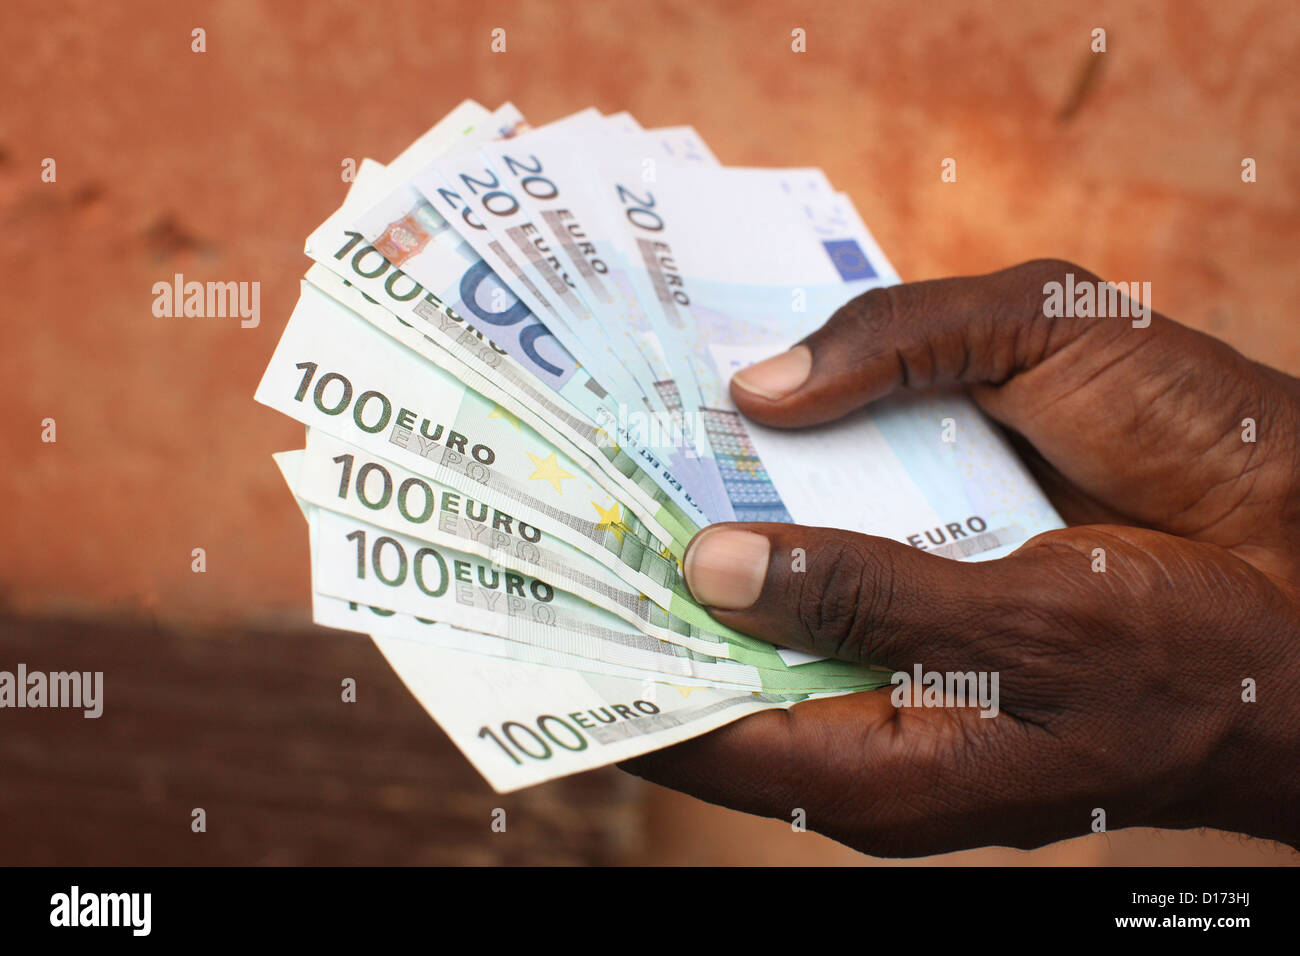 AFRICA, MONEY Stock Photo